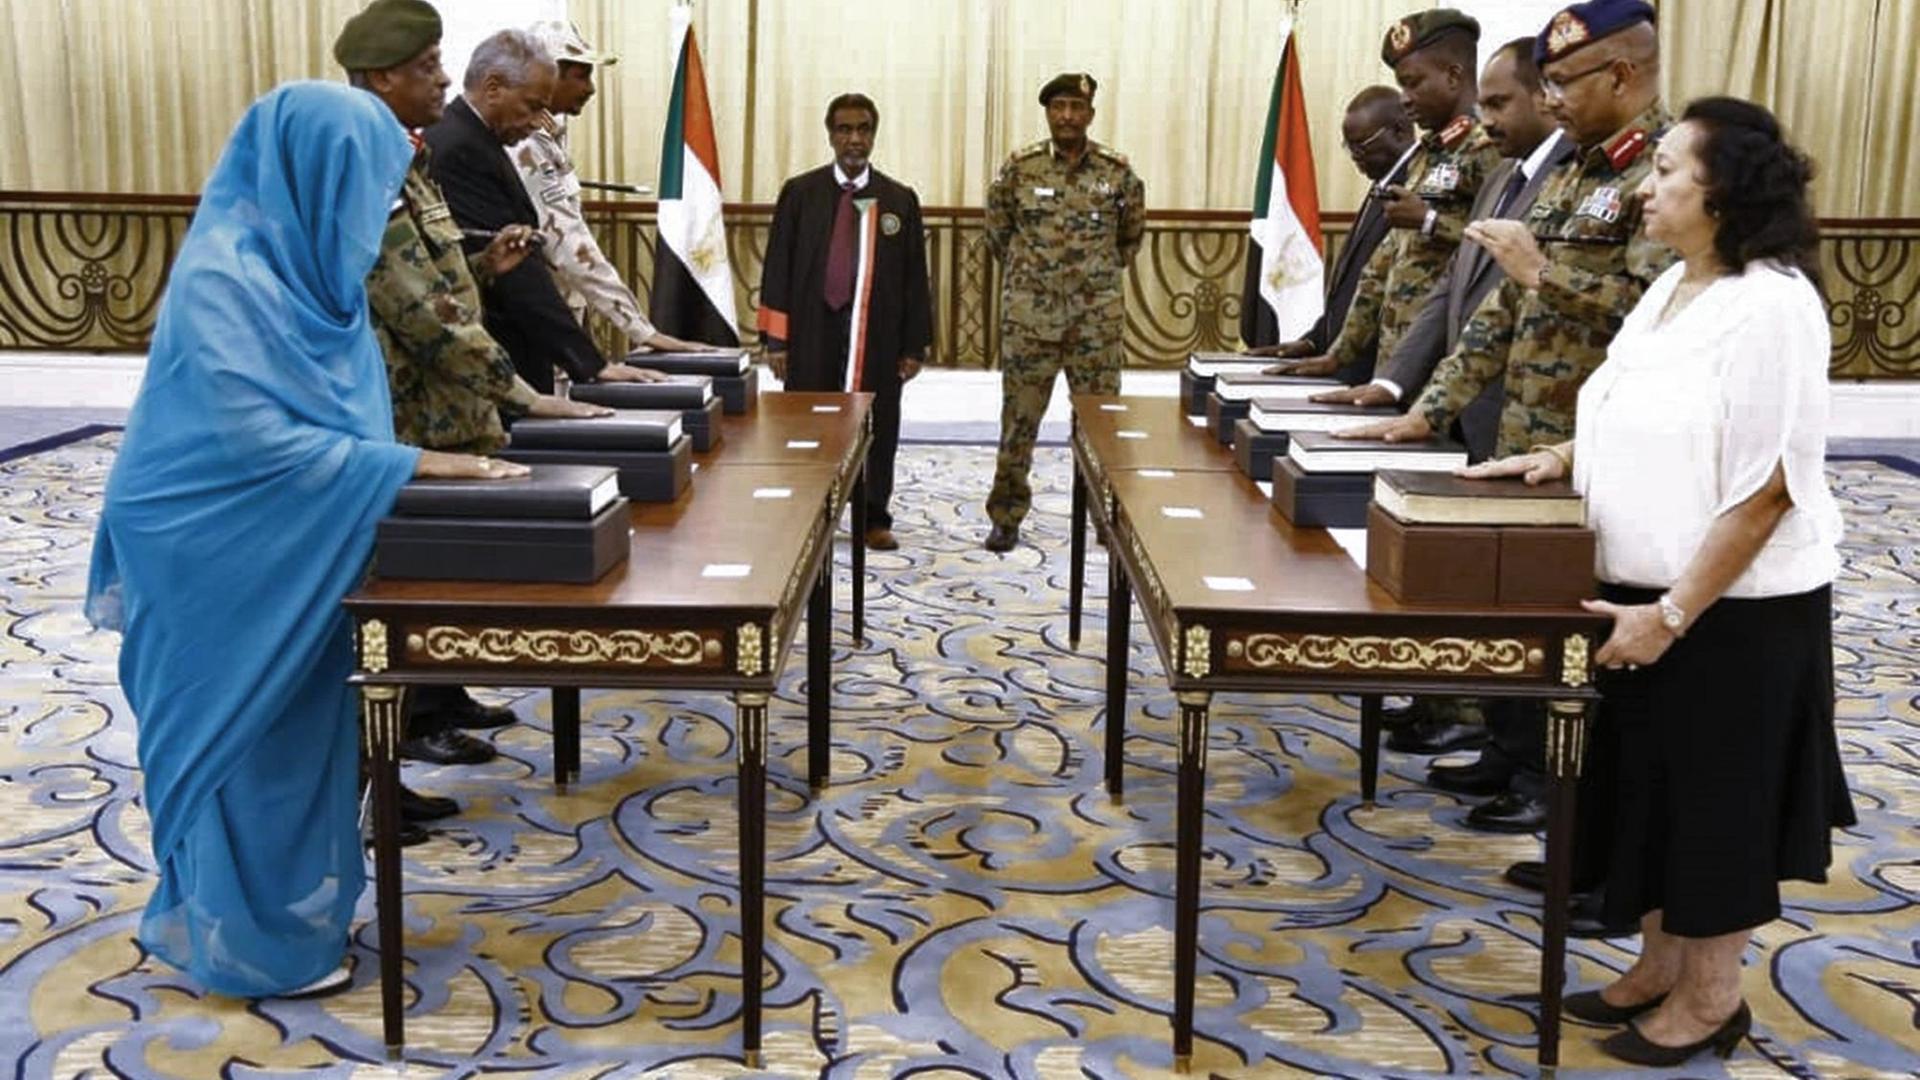 Das Foto zeigt die neue Regierung im Sudan.